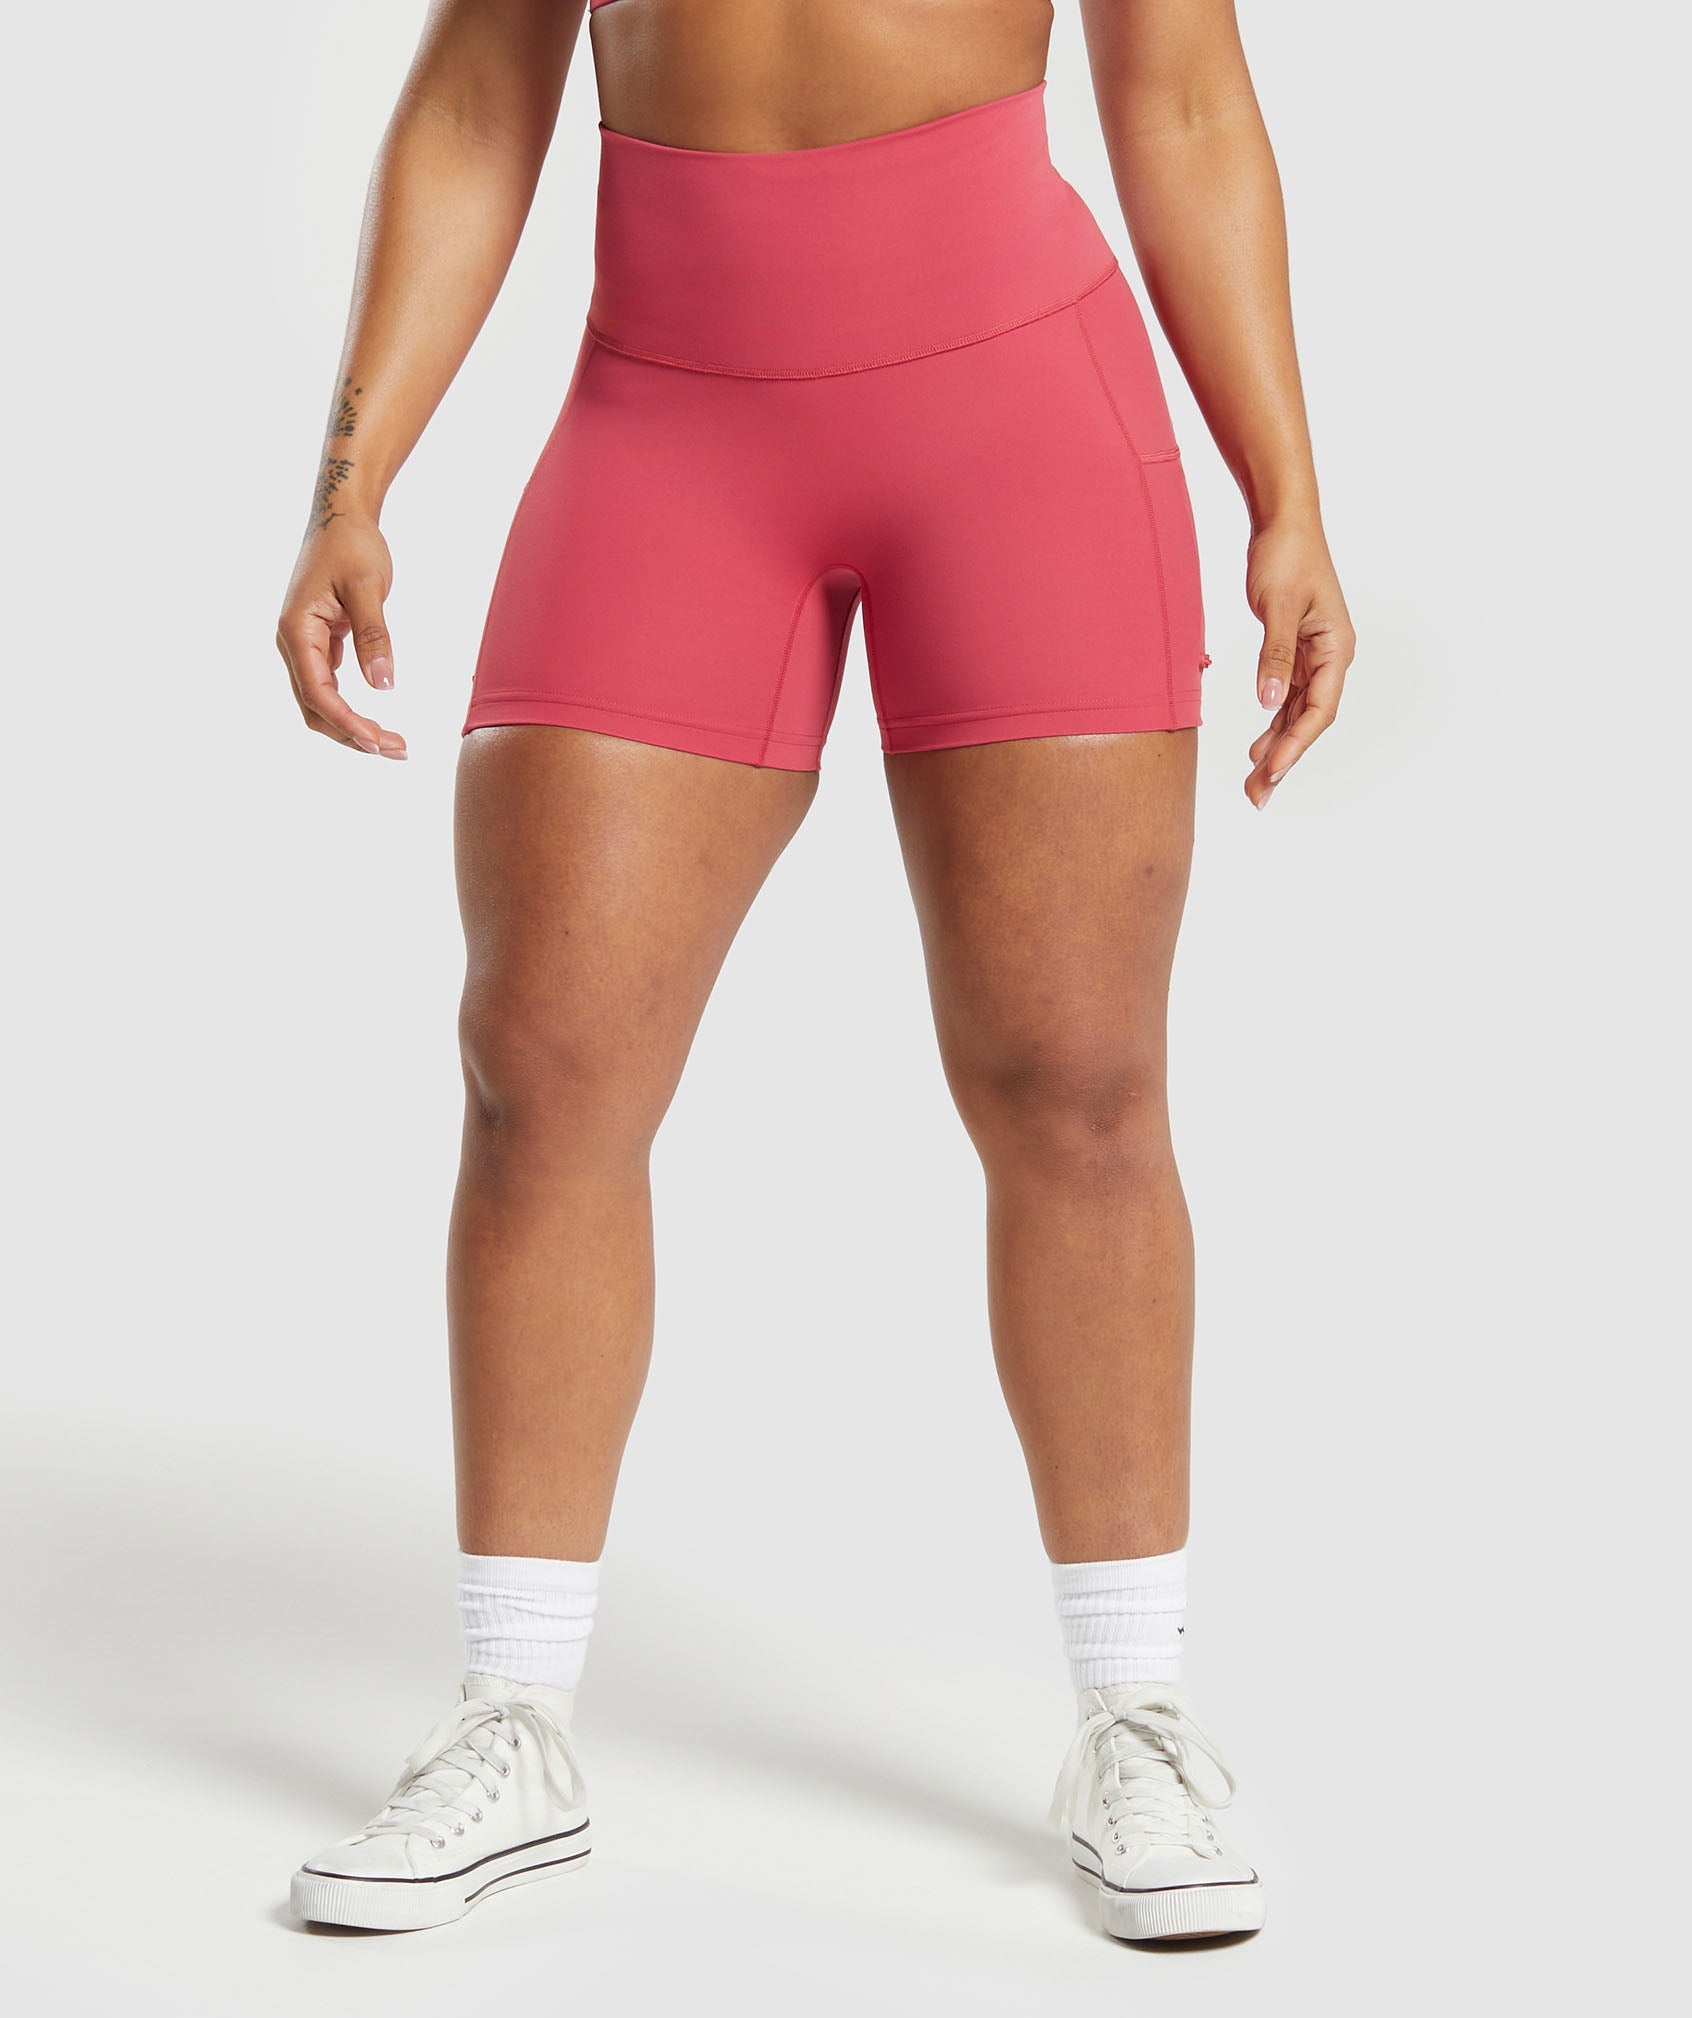 Gymshark Training Tight Shorts - Core Olive